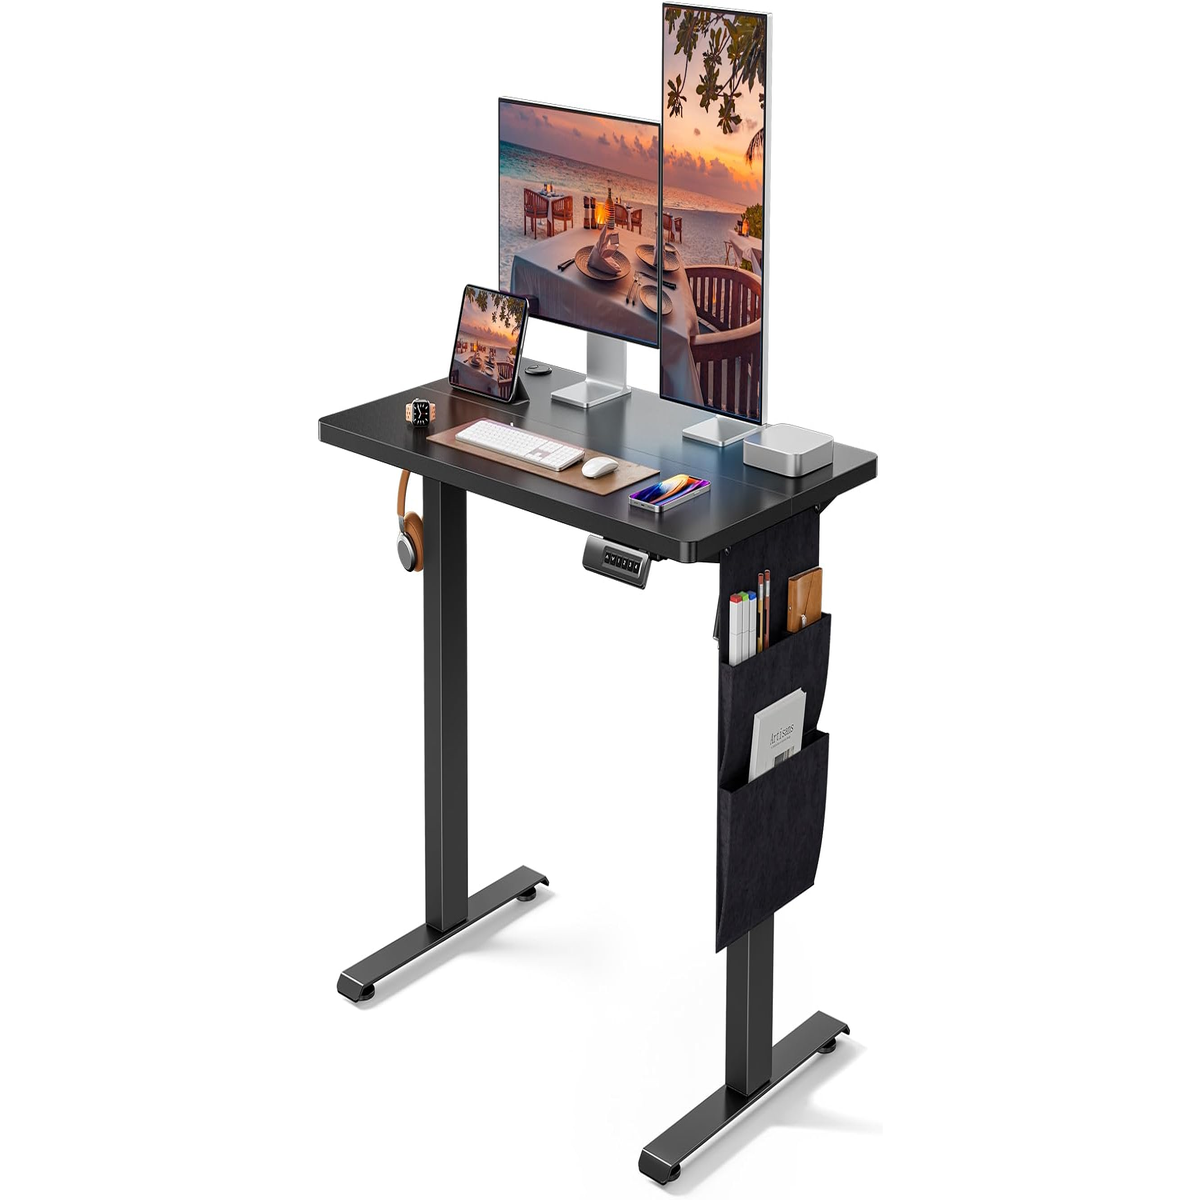 Standing Desk Deal: Flexispot's Adjustable Desk Is $100 Off Today